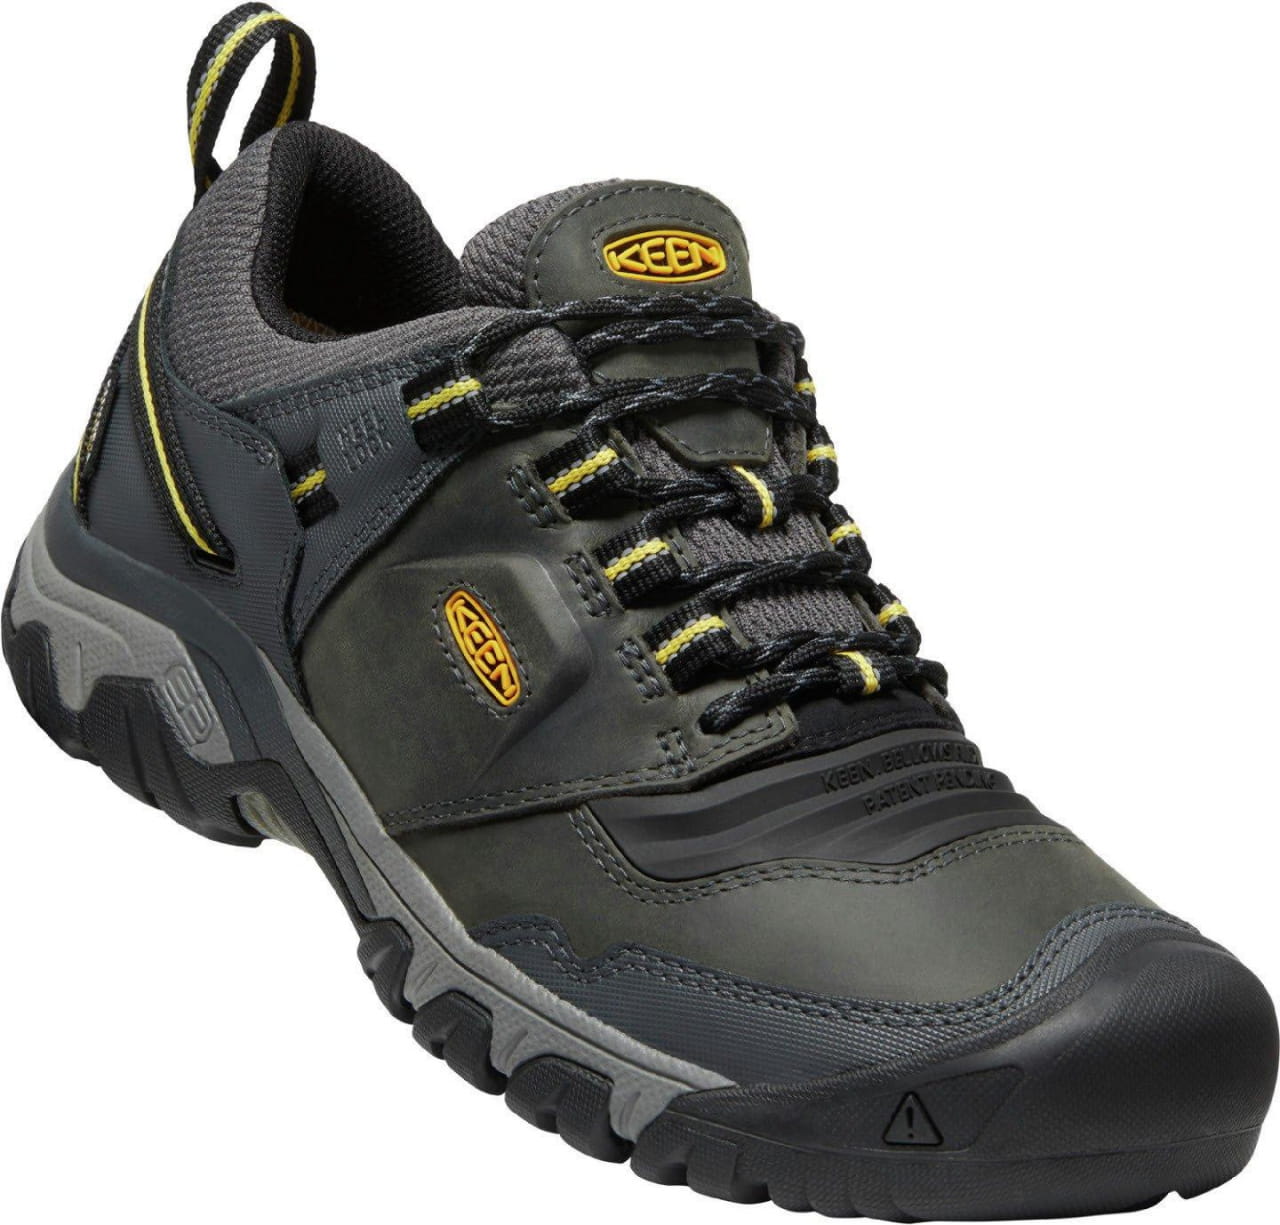 Outdoor-Schuhe für Männer Keen Ridge Flex Wp M